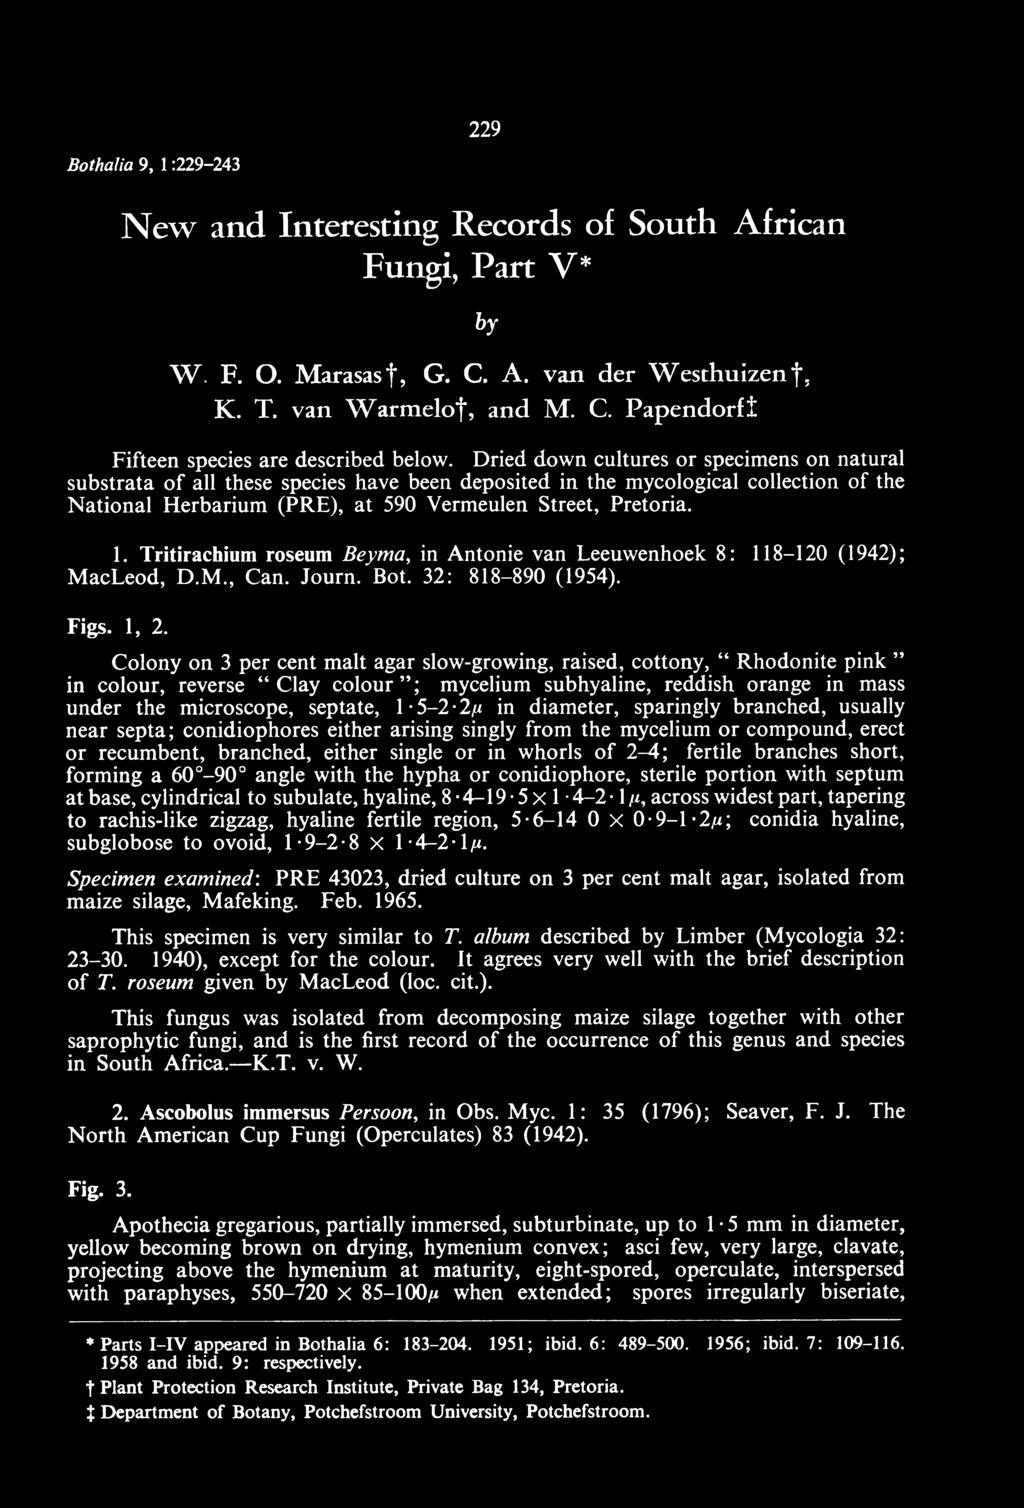 Tritirachium roseum Beyma, in Antonie van Leeuwenhoek 8 : 118-120 (1942); M acleod, D.M., Can. Journ. Bot. 32: 818-890 (1954). Figs. 1, 2.